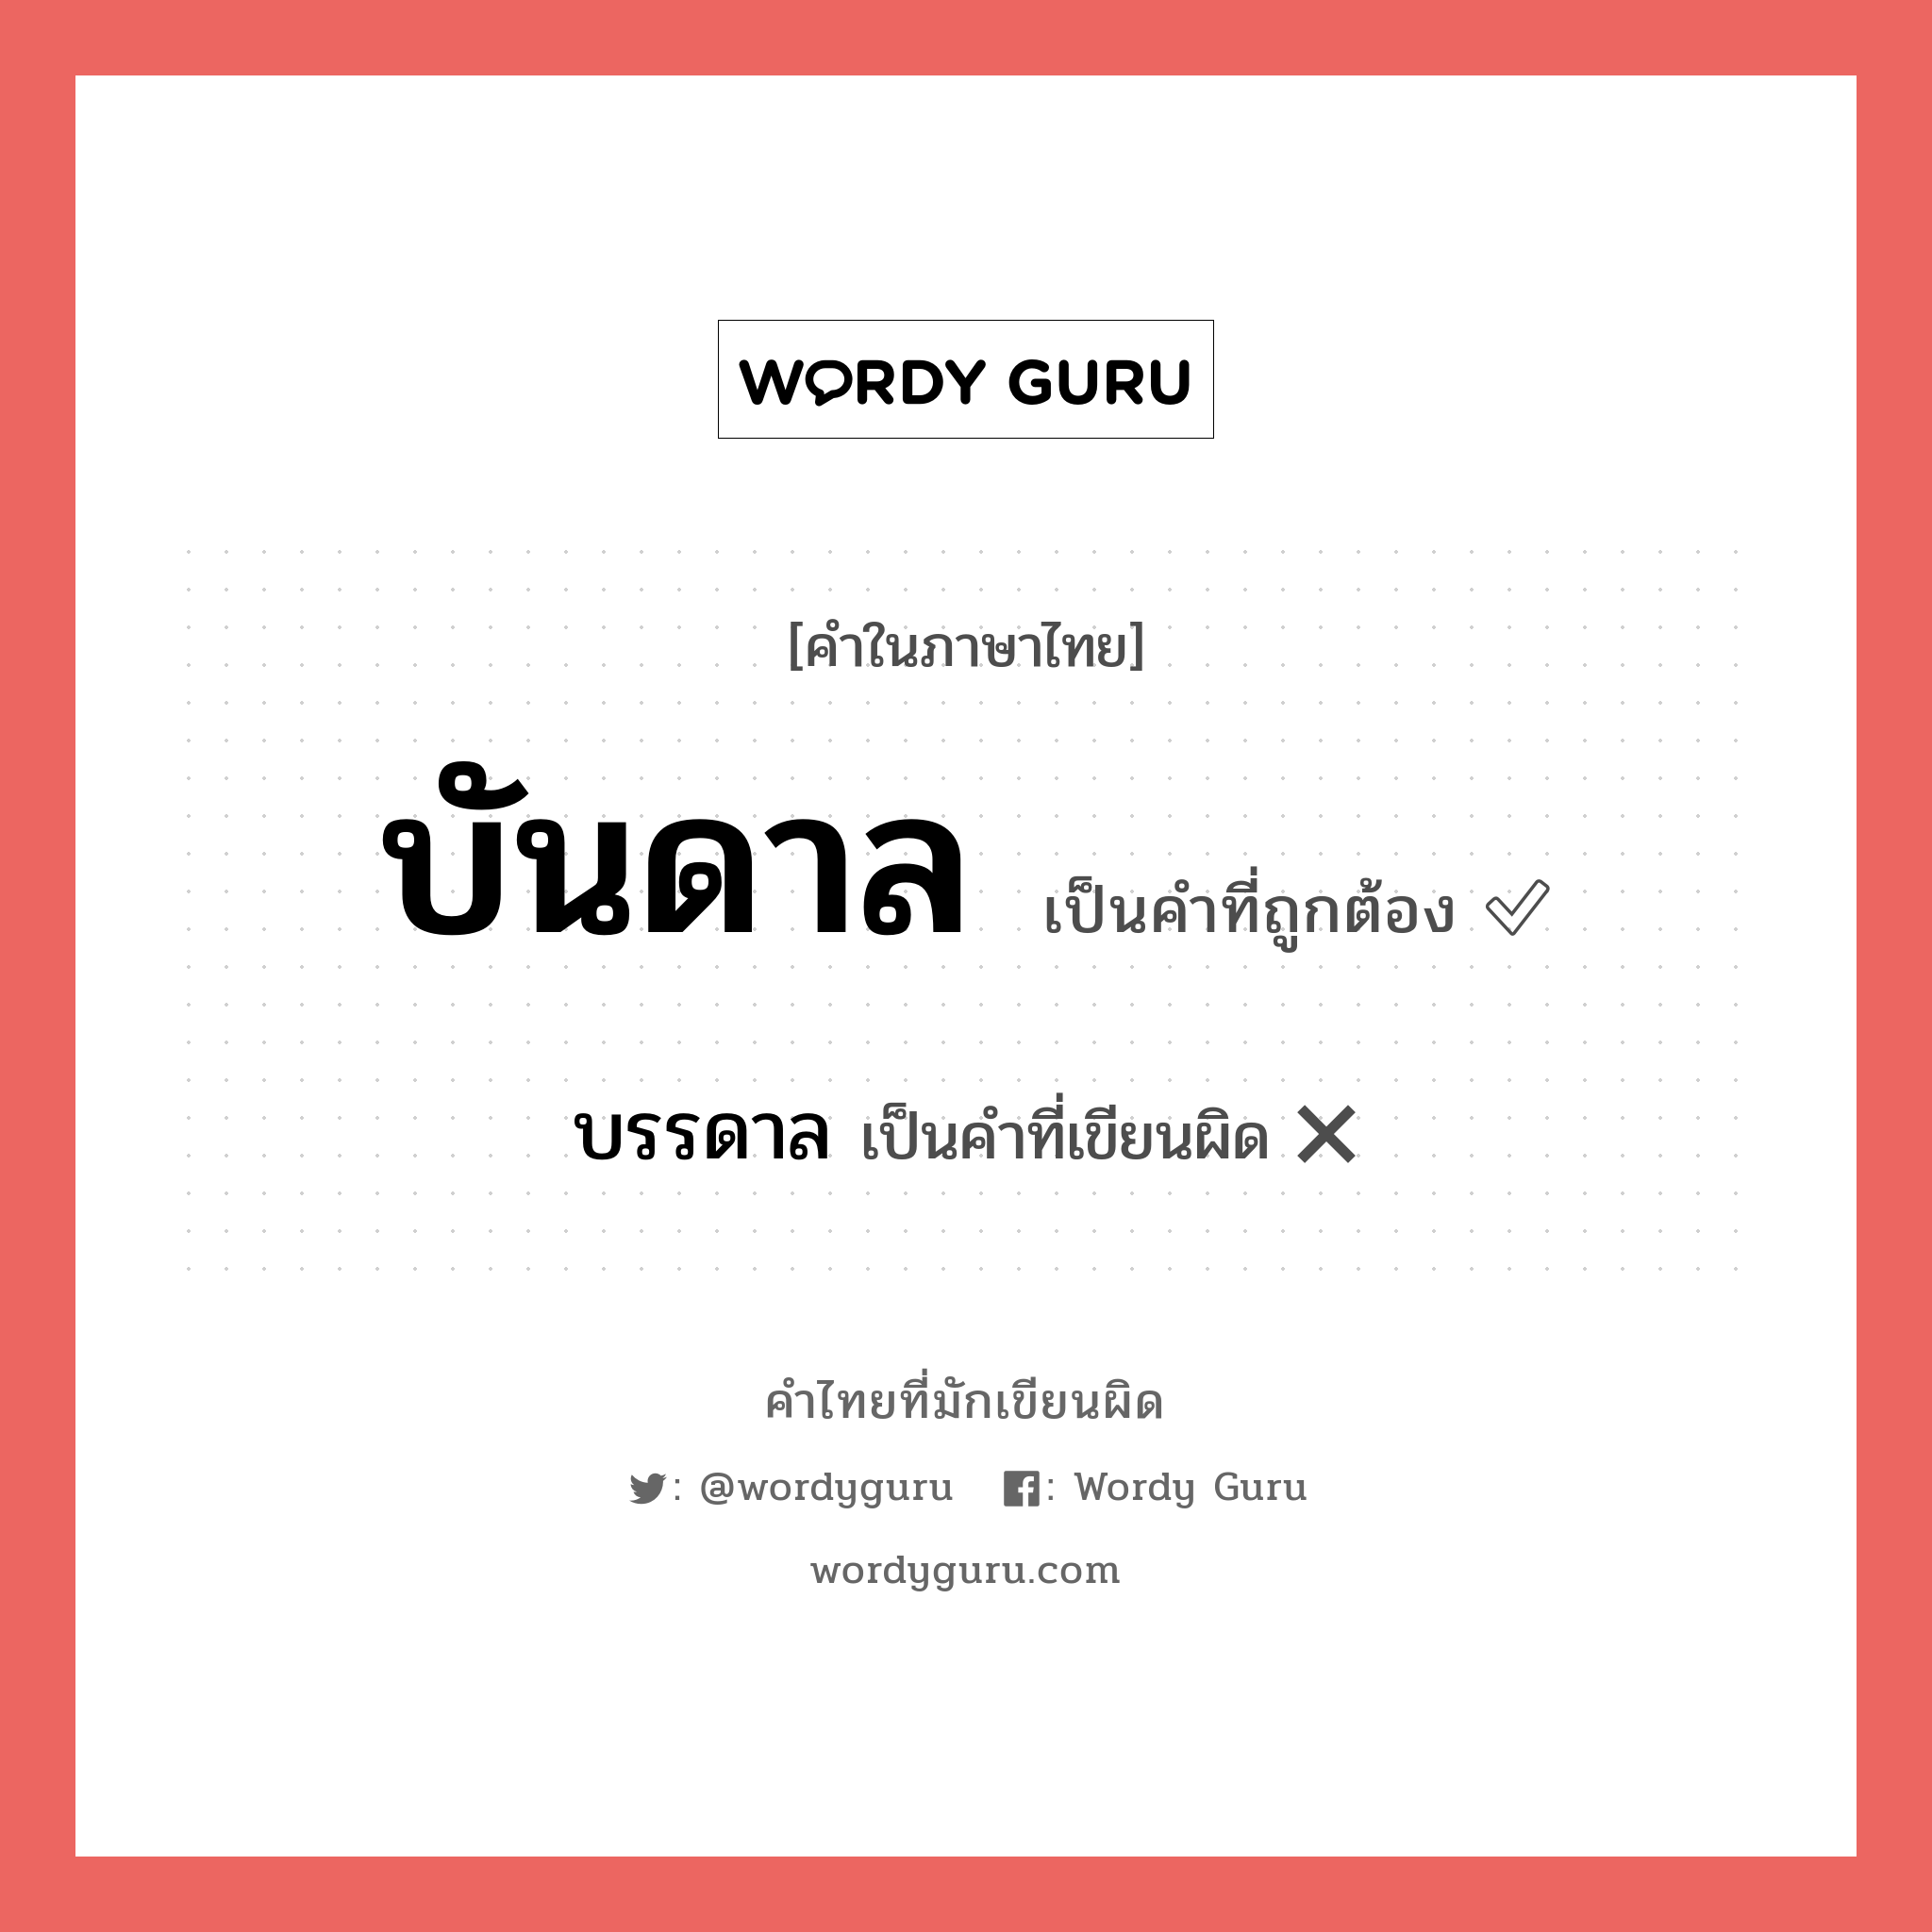 บันดาล หรือ บรรดาล คำไหนเขียนถูก?, คำในภาษาไทยที่มักเขียนผิด บันดาล คำที่ผิด ❌ บรรดาล